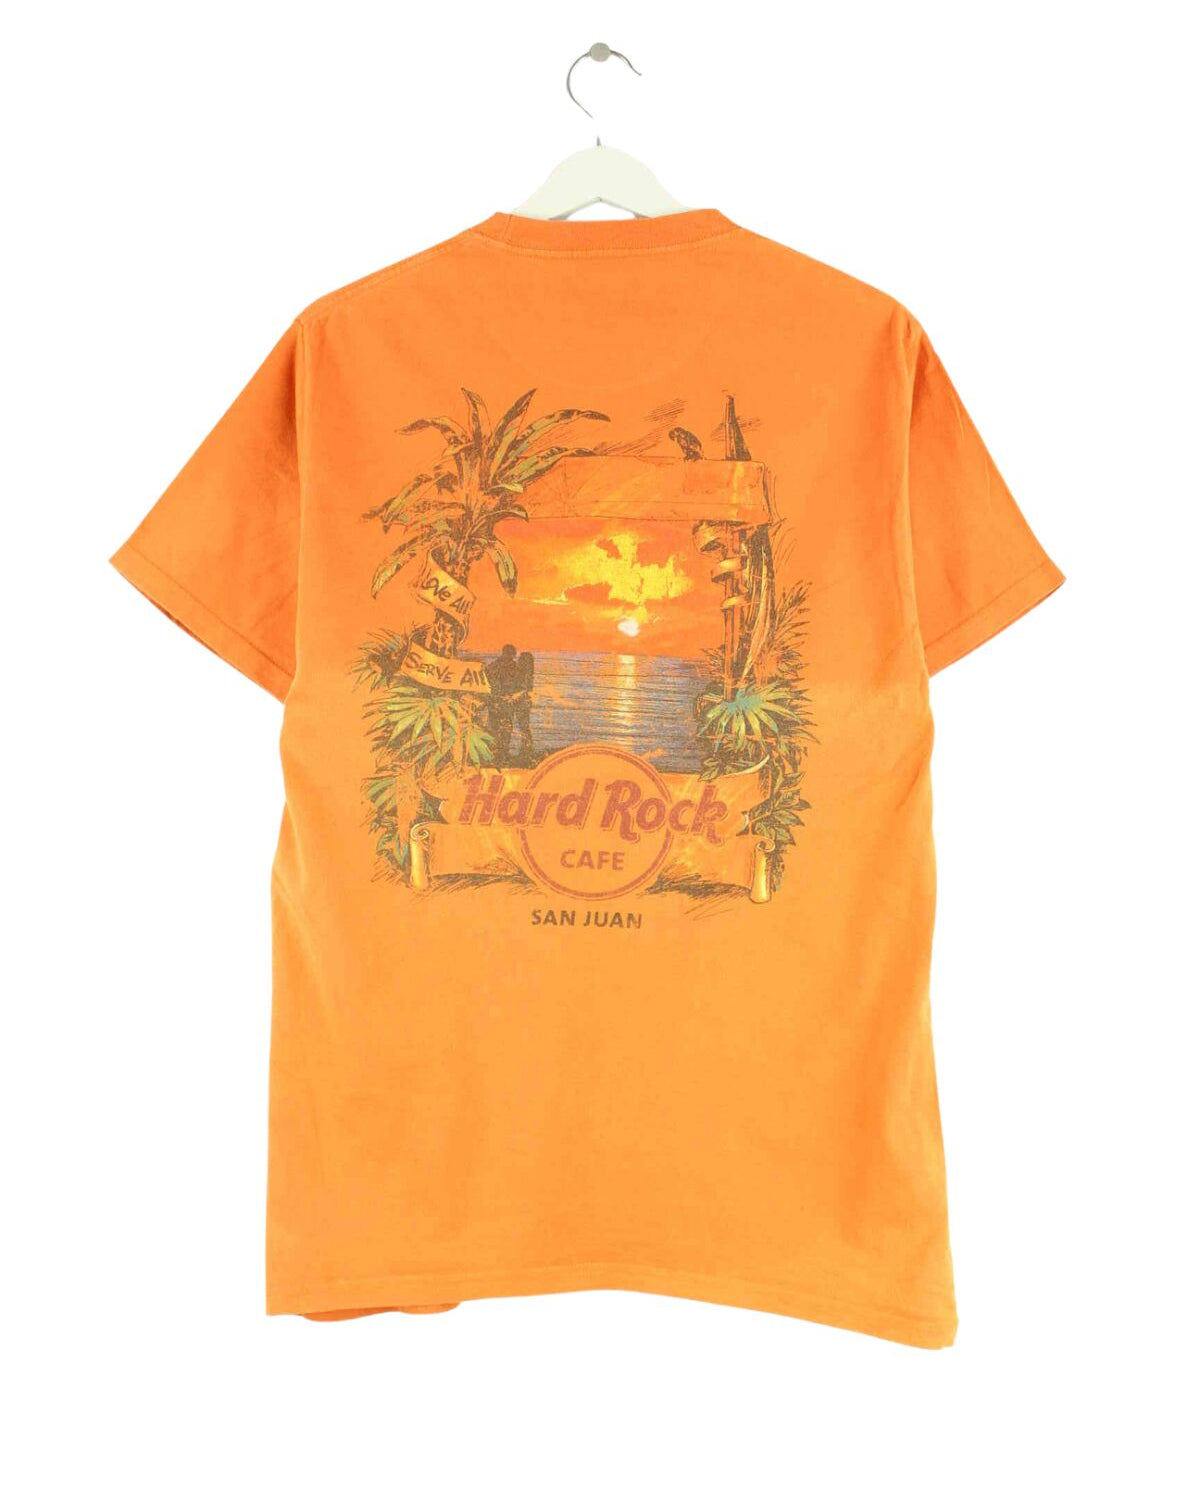 Hard Rock Cafe San Juan Print T-Shirt Orange M (back image)